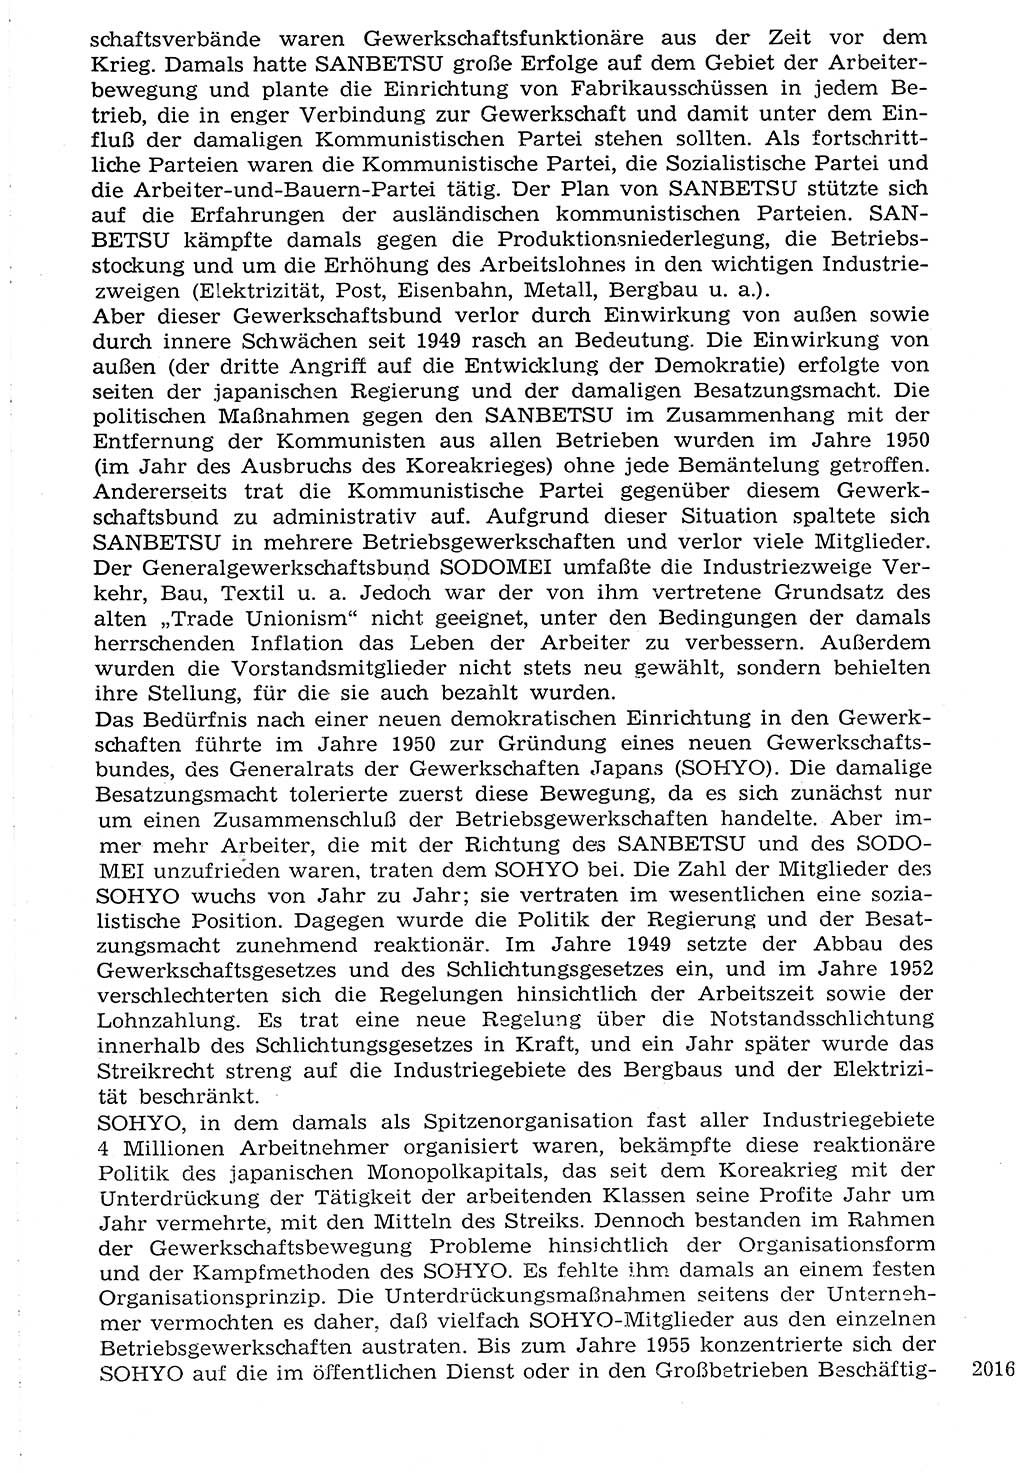 Staat und Recht (StuR), 17. Jahrgang [Deutsche Demokratische Republik (DDR)] 1968, Seite 2016 (StuR DDR 1968, S. 2016)